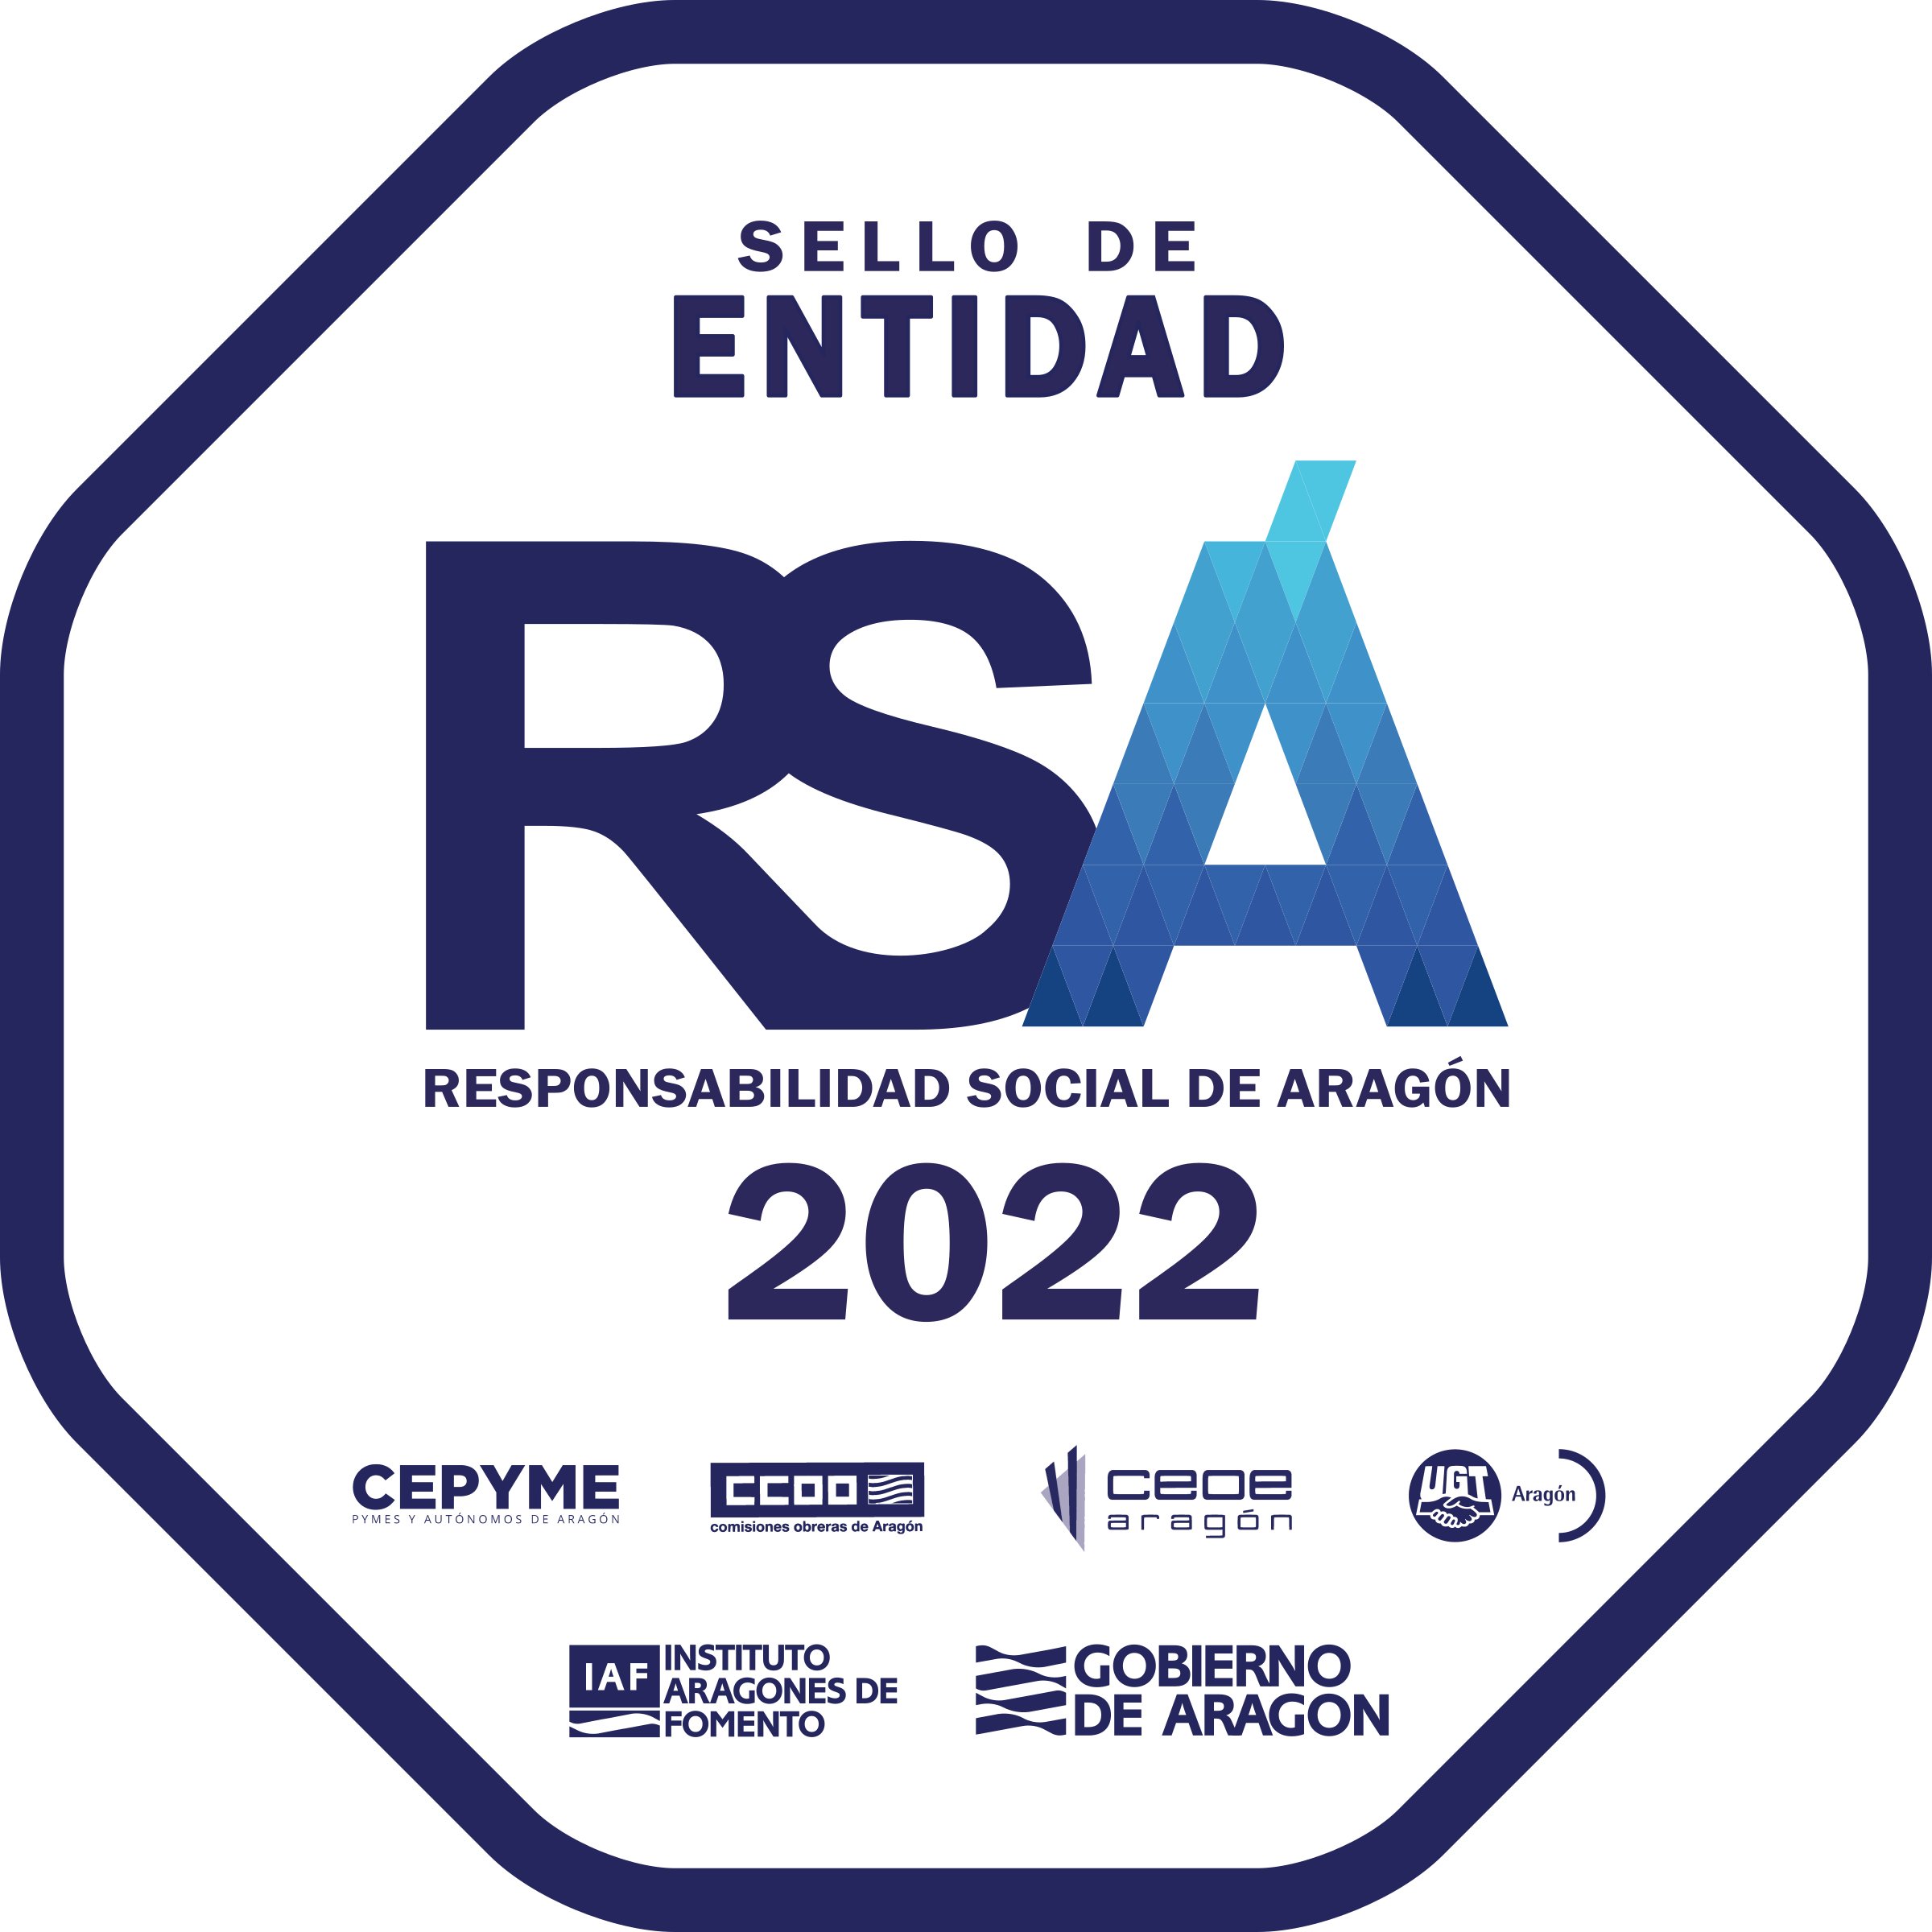 Sello de entidad RSA (Responsabilidad Social de Aragón) 2002